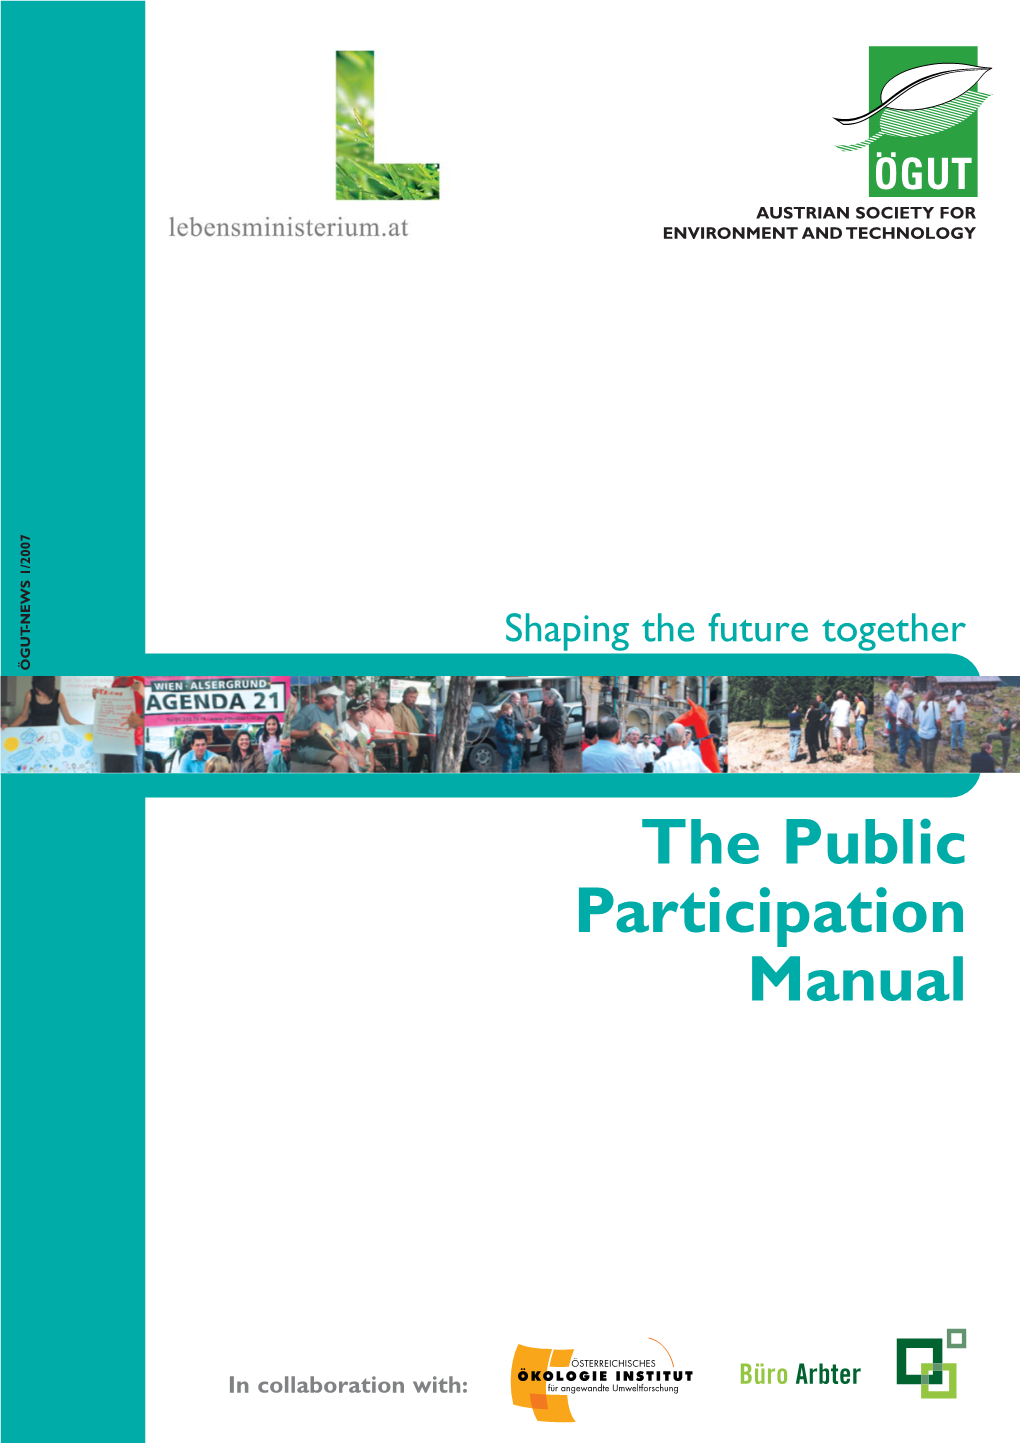 The Public Participation Manual